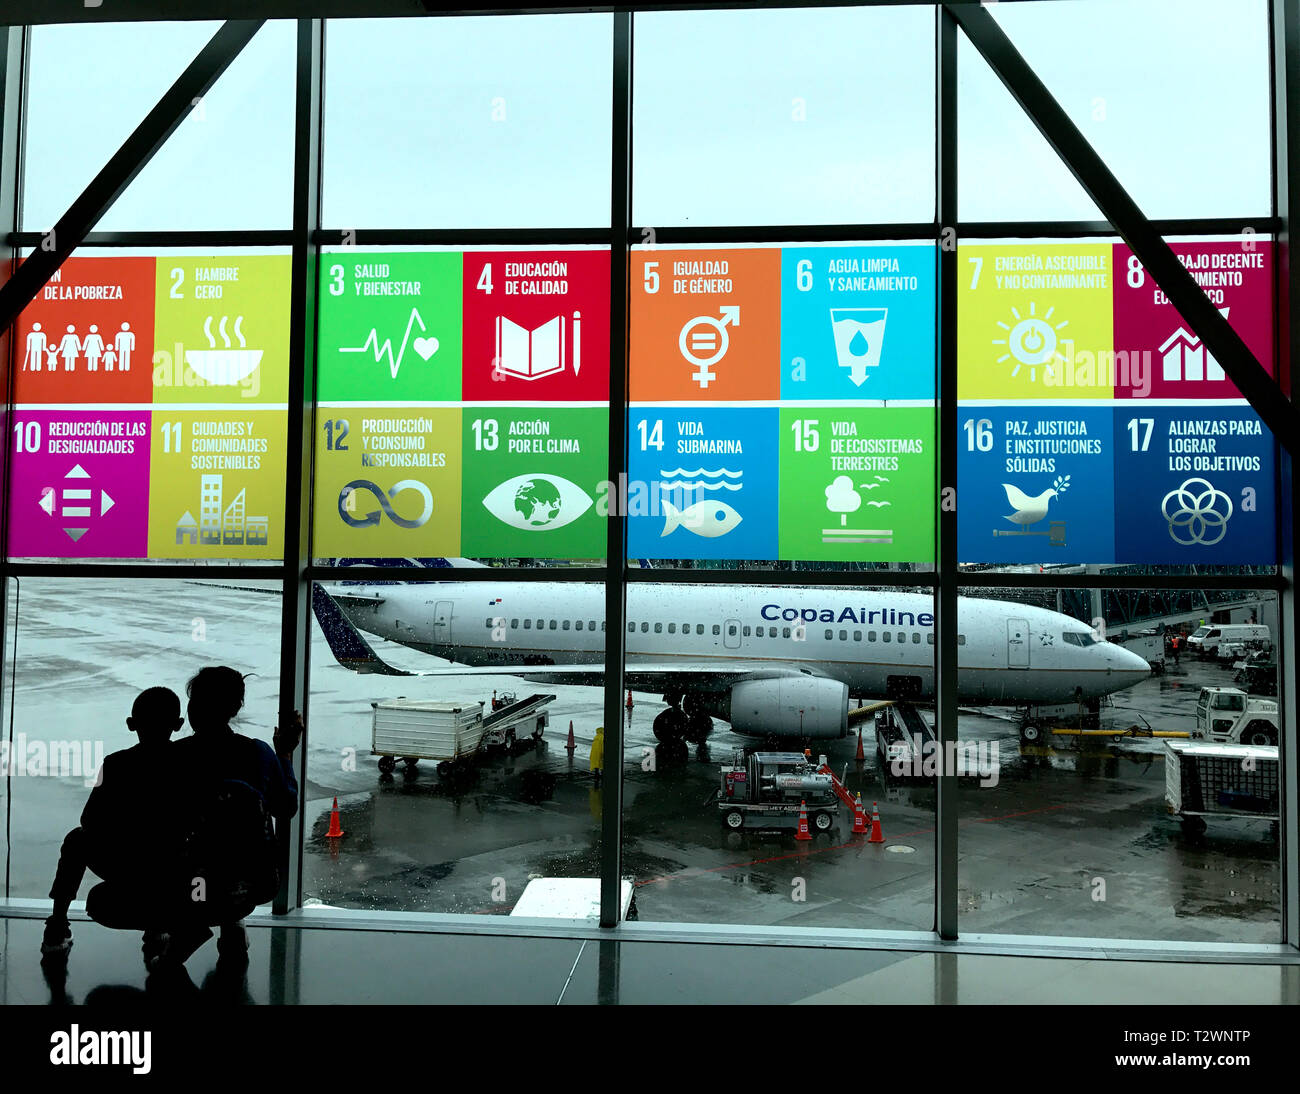 Die globalen Ziele angezeigt in Spanisch auf der Windows am Panama City Tocumen International Airport. Mutter und Kind, die Flugzeuge zu sehen. Stockfoto